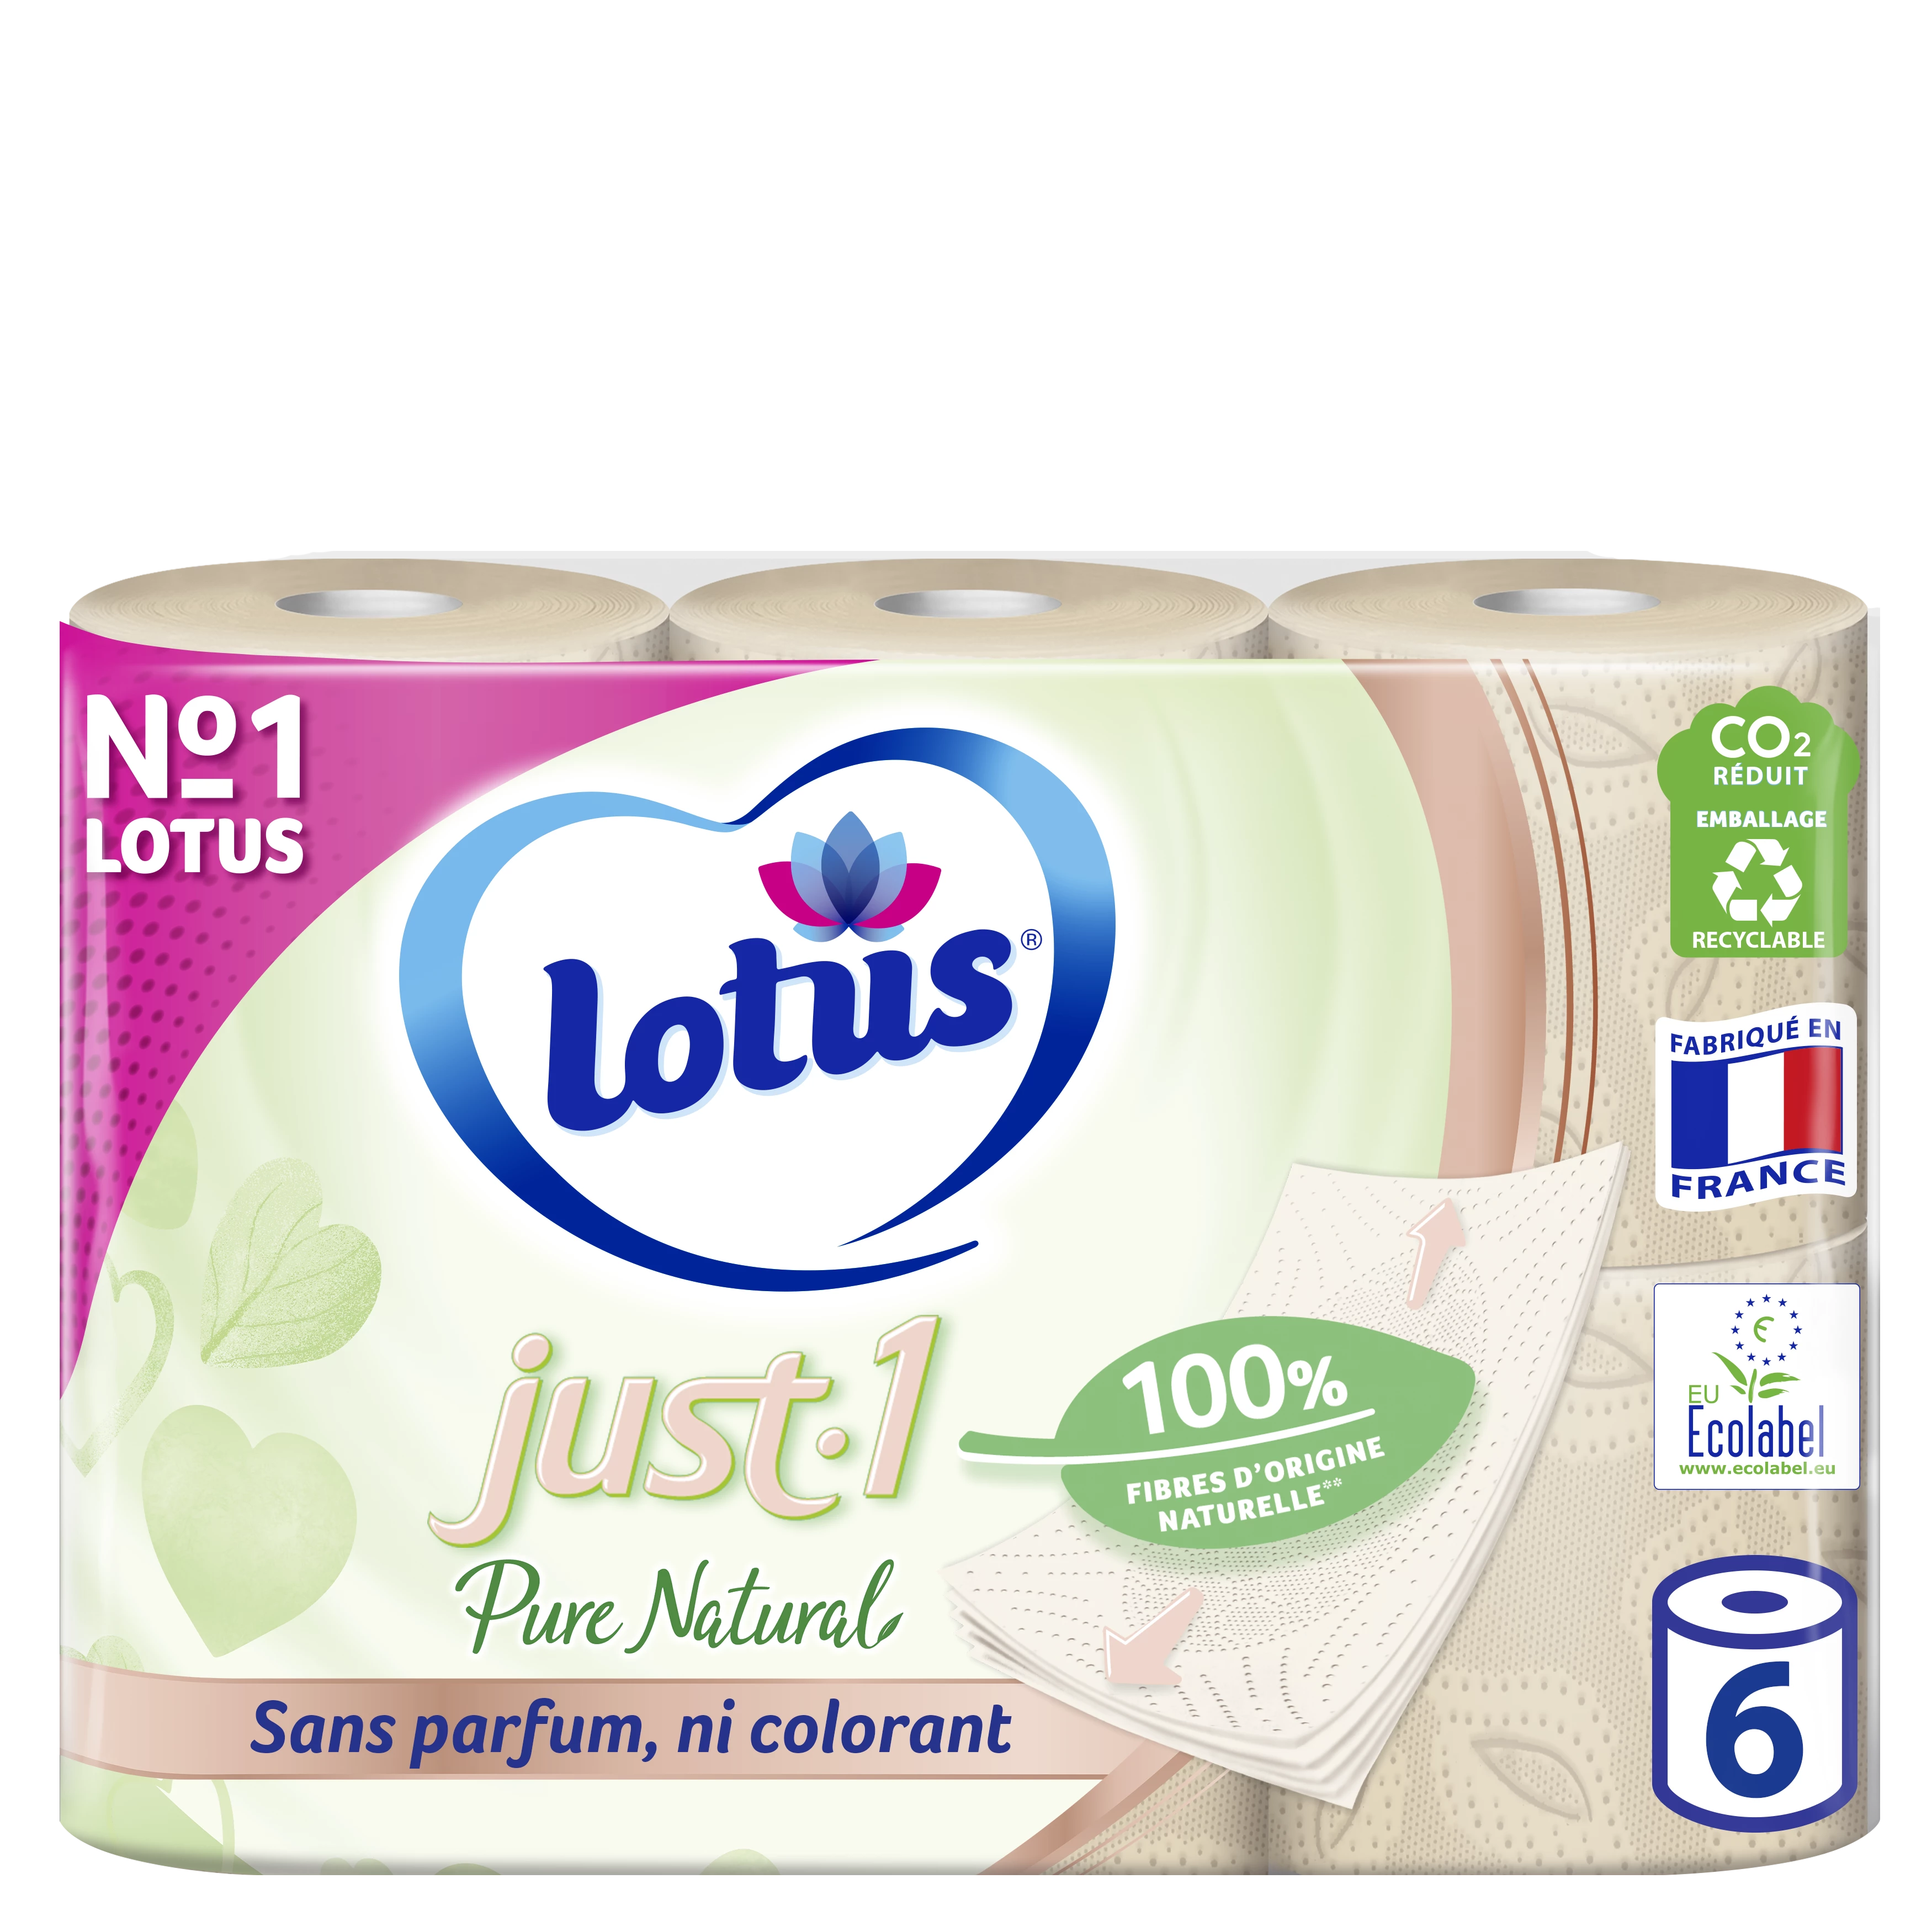 Lotus just1 pur natural papier toilette 6 rouleaux